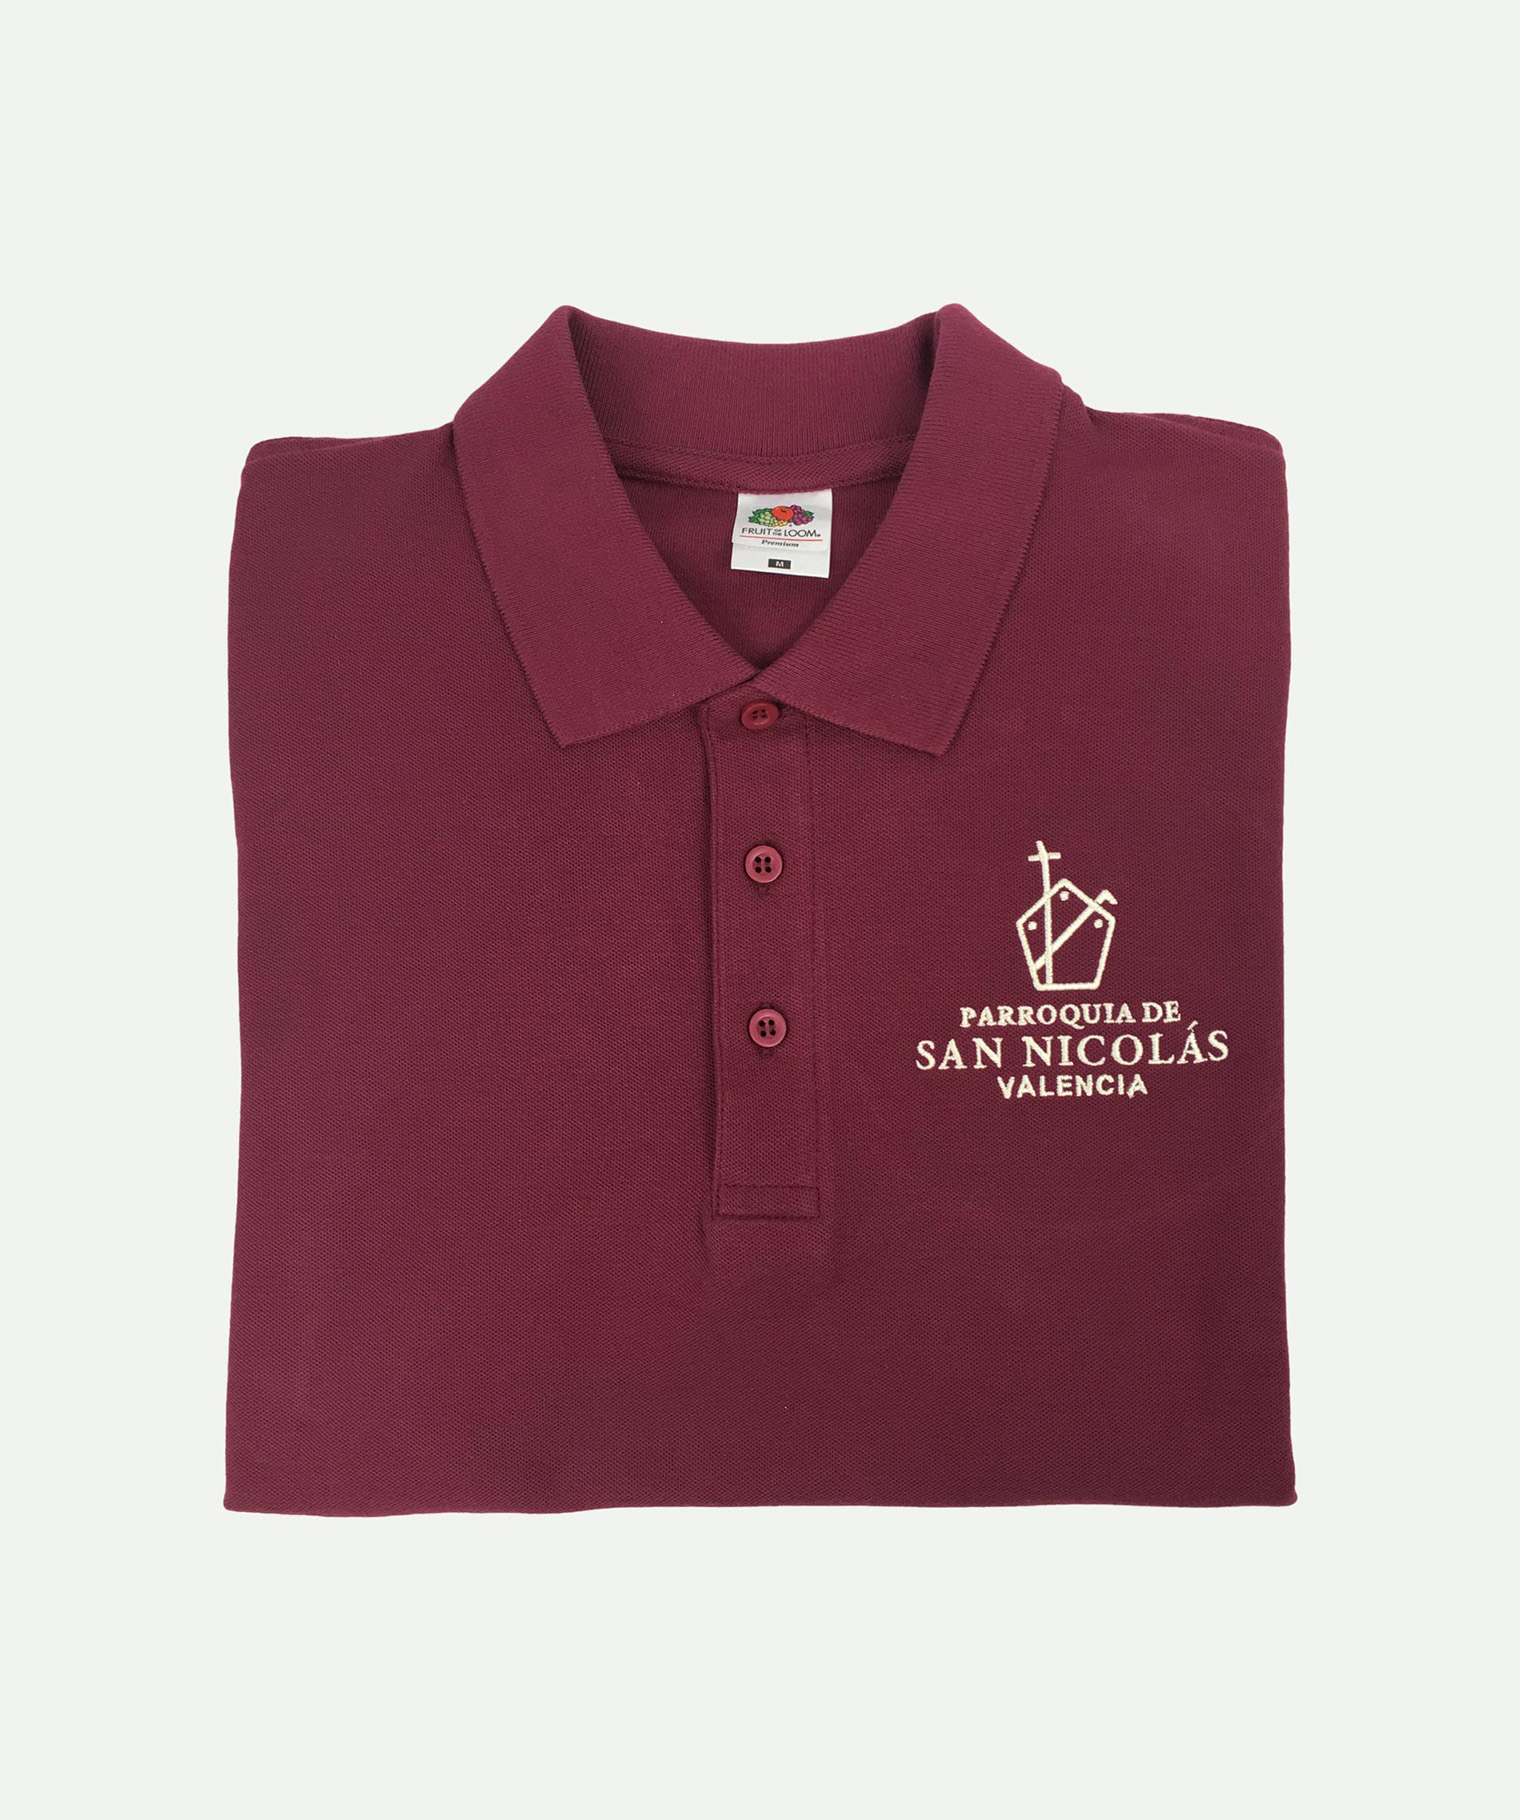 Burgundy embroidered polo shirt